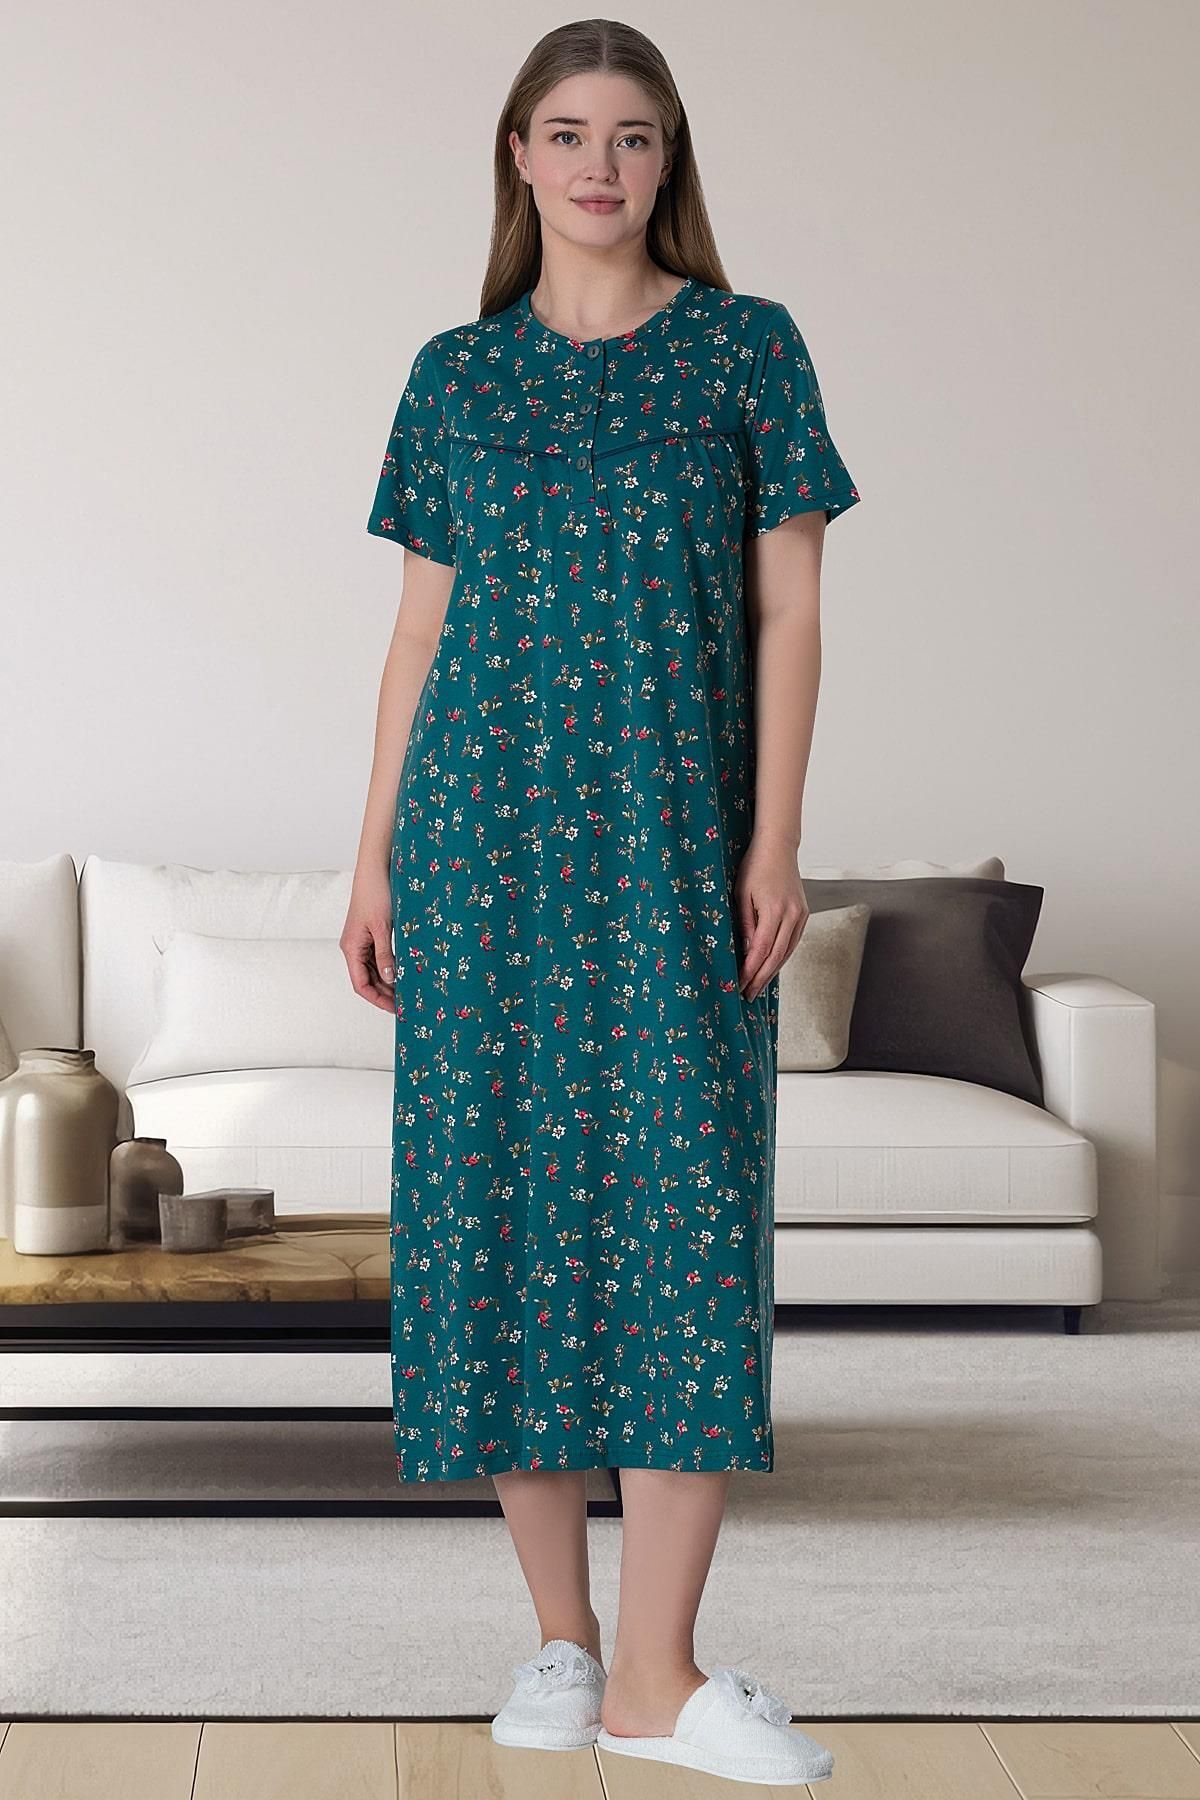 Mecit Pijama Büyük Beden Kısa Kollu Kadın Anne Gecelik Gecelik Çiçek desenli  %100 Pamuk